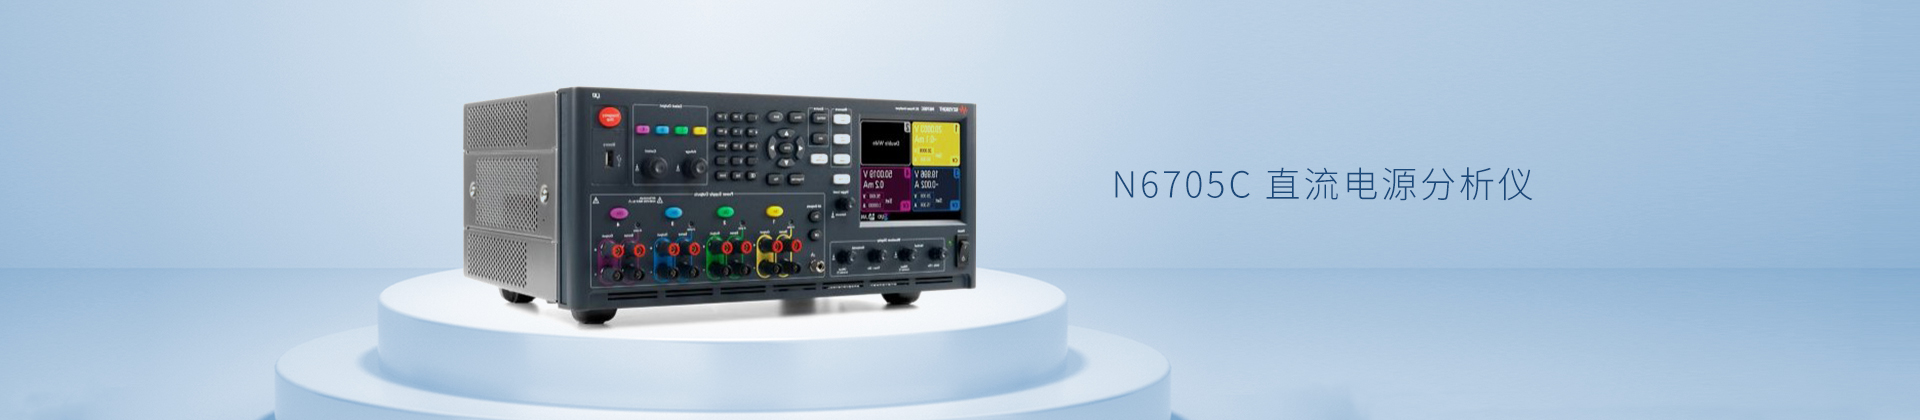 N6705C 直流电源分析仪